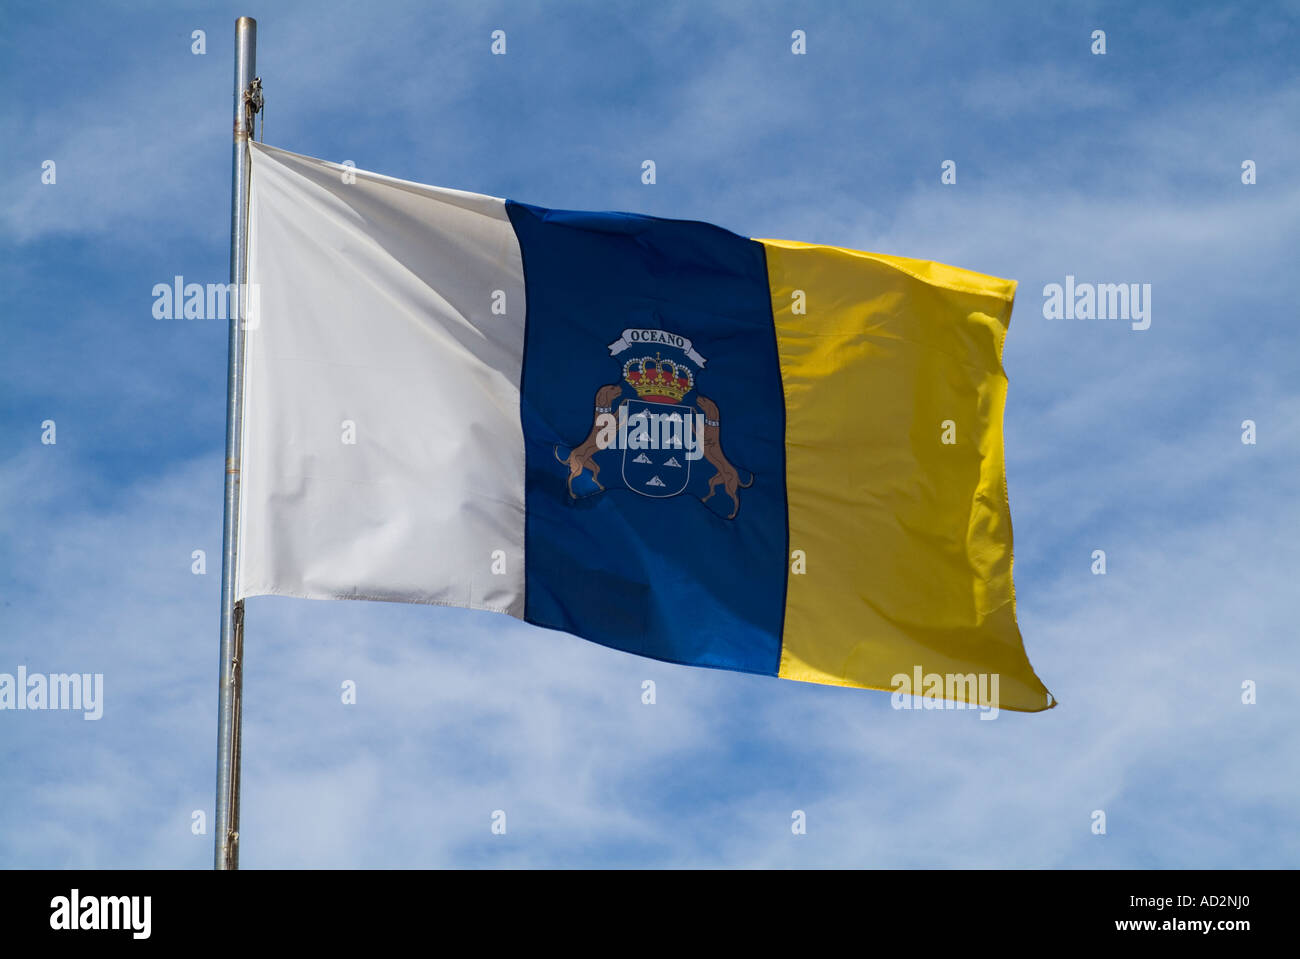 Dh bandiera FUERTEVENTURA bianco blu e giallo standard isola Canarie bandiera nazionale Foto Stock